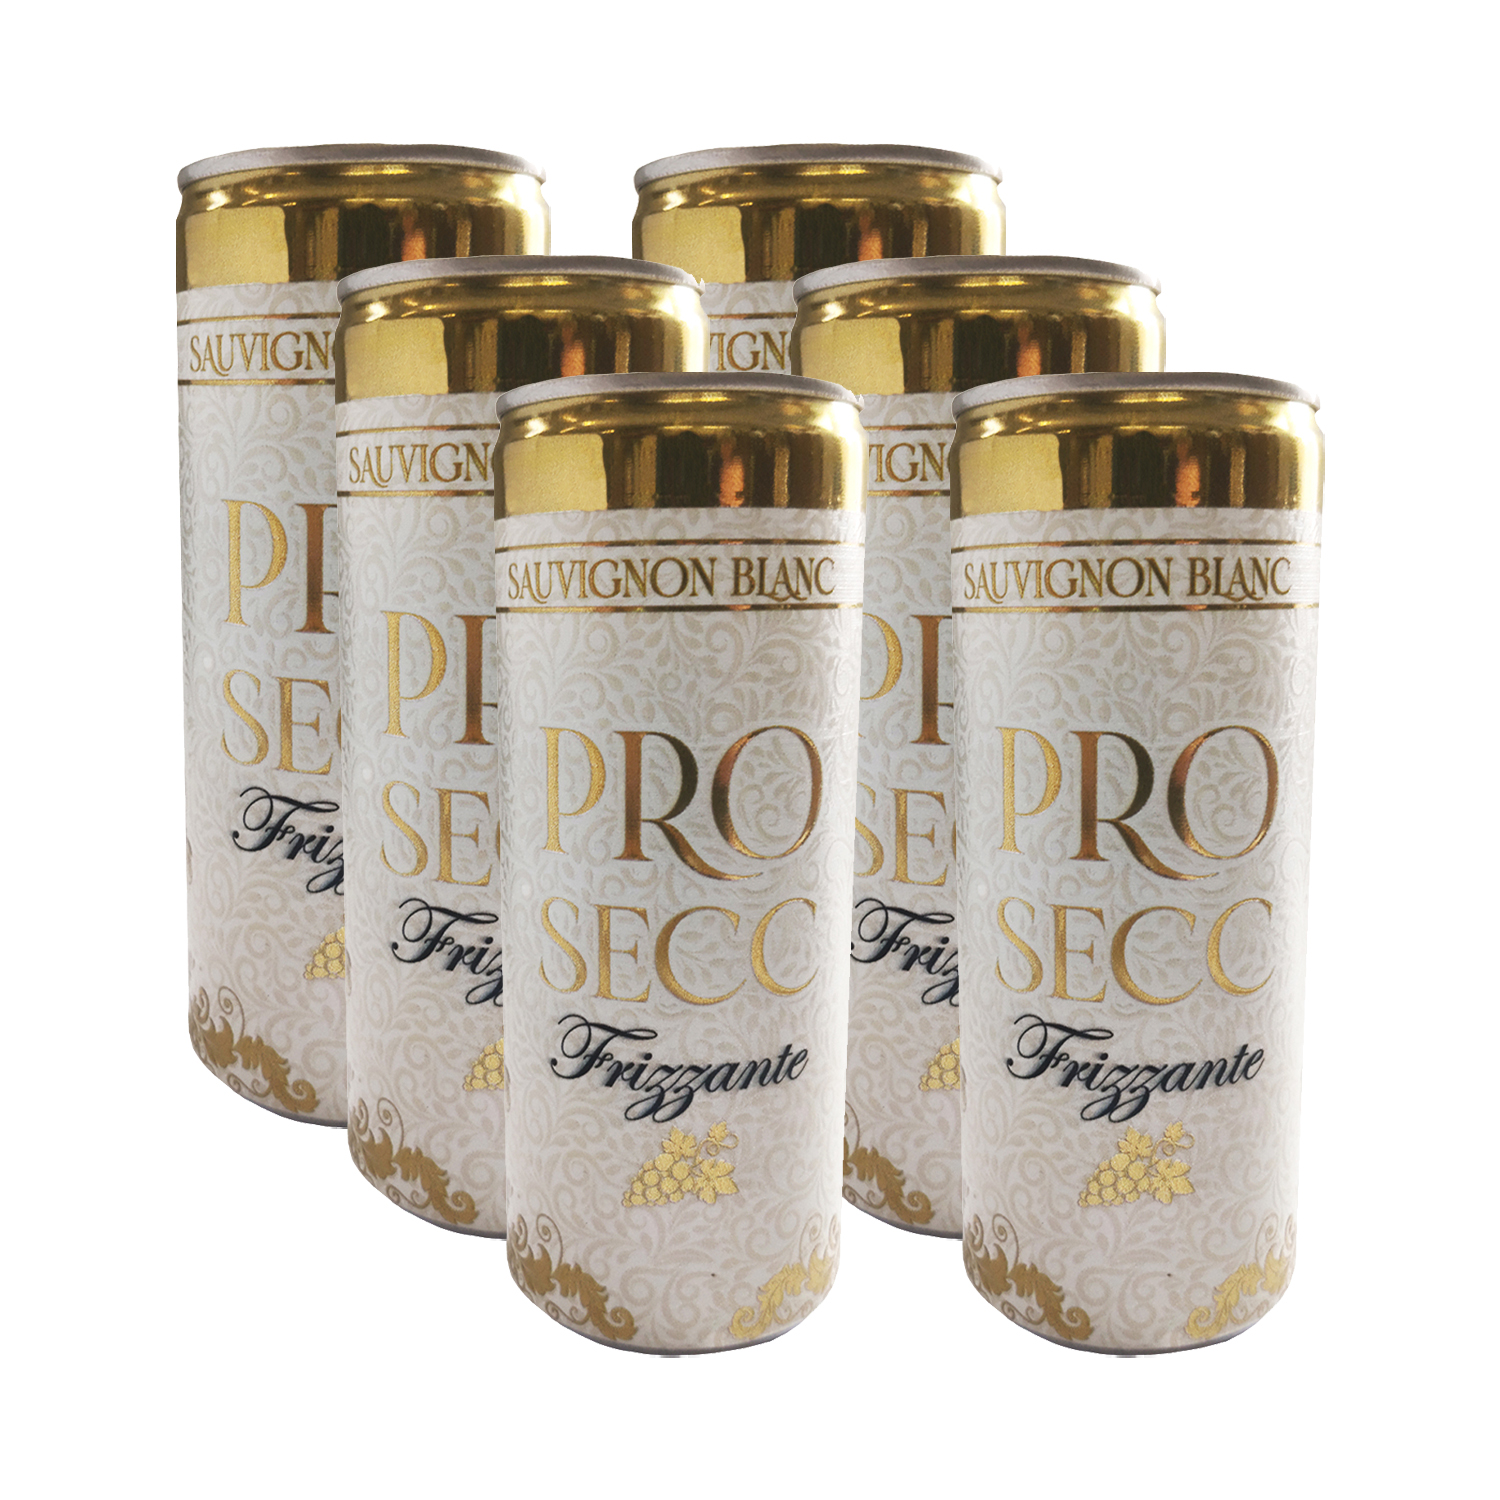 Pro Secc ProSecc Frizzante Suché Biele 2020 13,10% 0,25L (balenie 6ks)